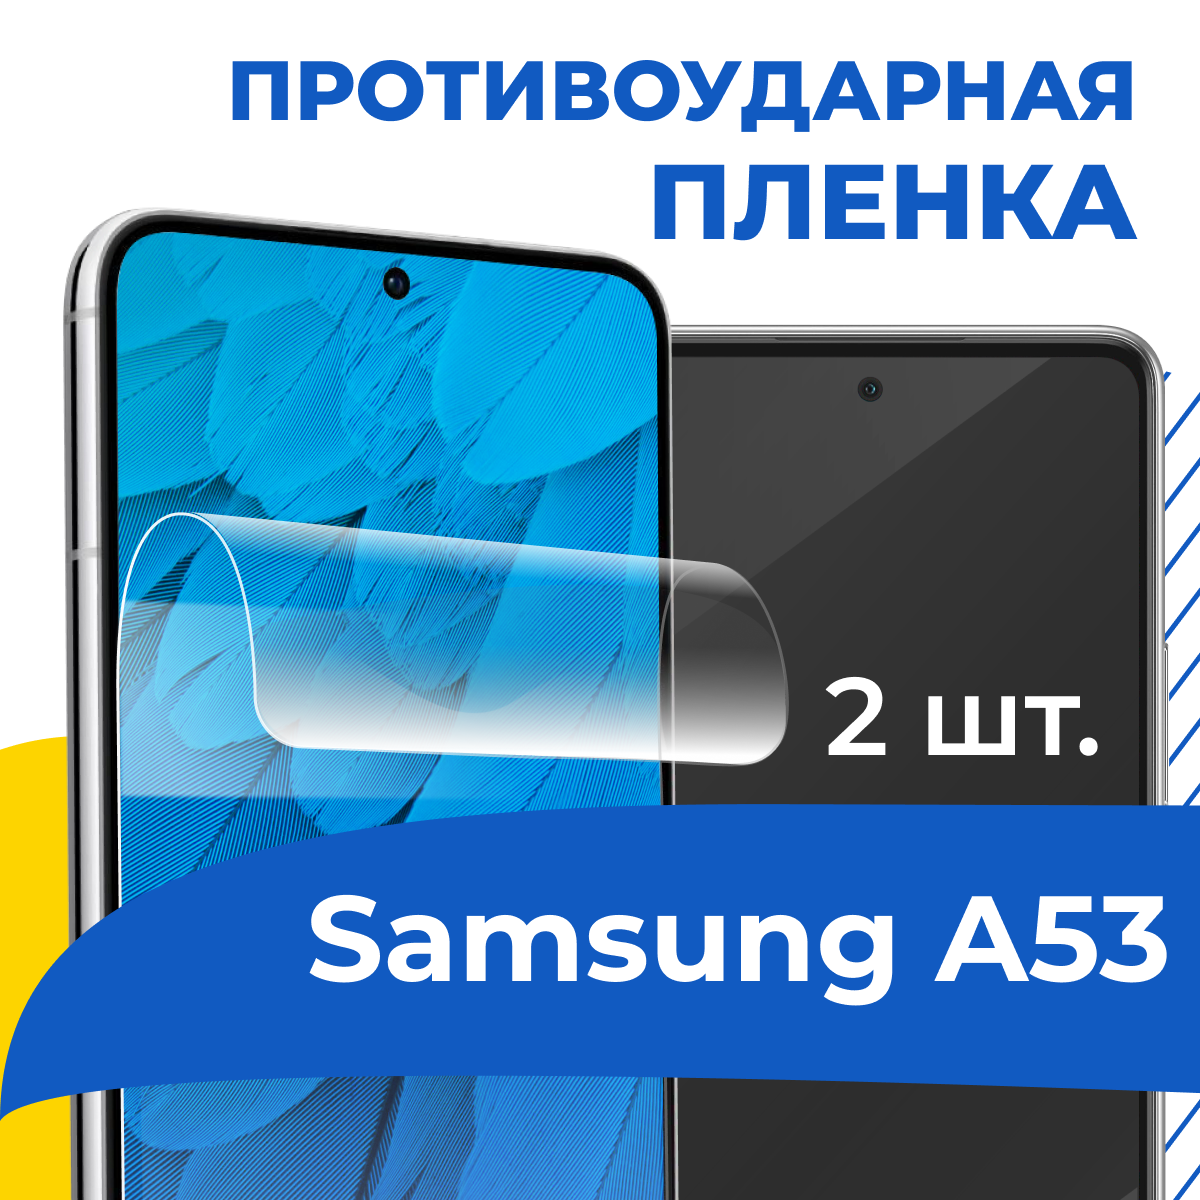 Комплект 2 шт. Гидрогелевая пленка для телефона Samsung Galaxy A53 / Противоударная защитная пленка на смартфон Самсунг Галакси А53 / Самовосстанавливающаяся пленка